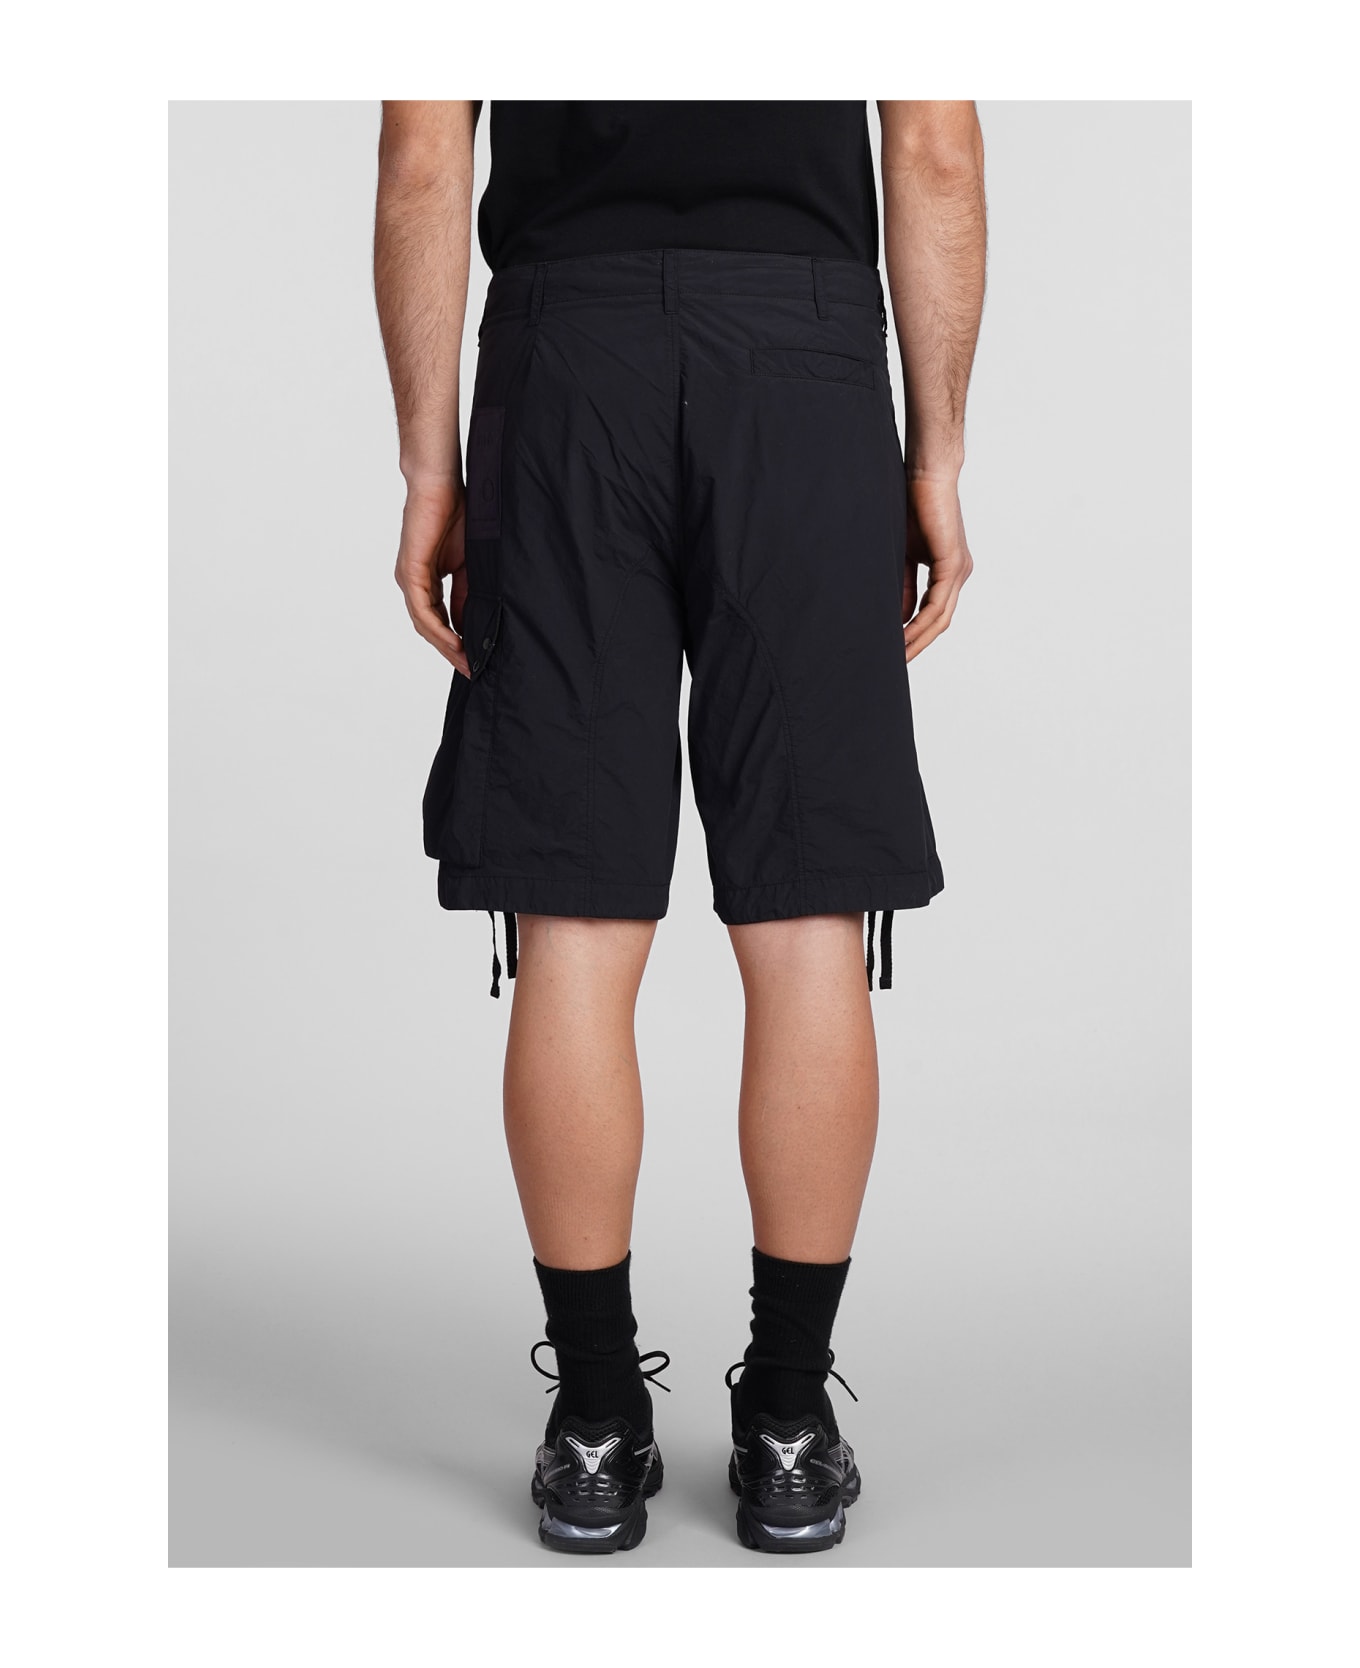 Ten C Shorts In Black Polyester - black ショートパンツ